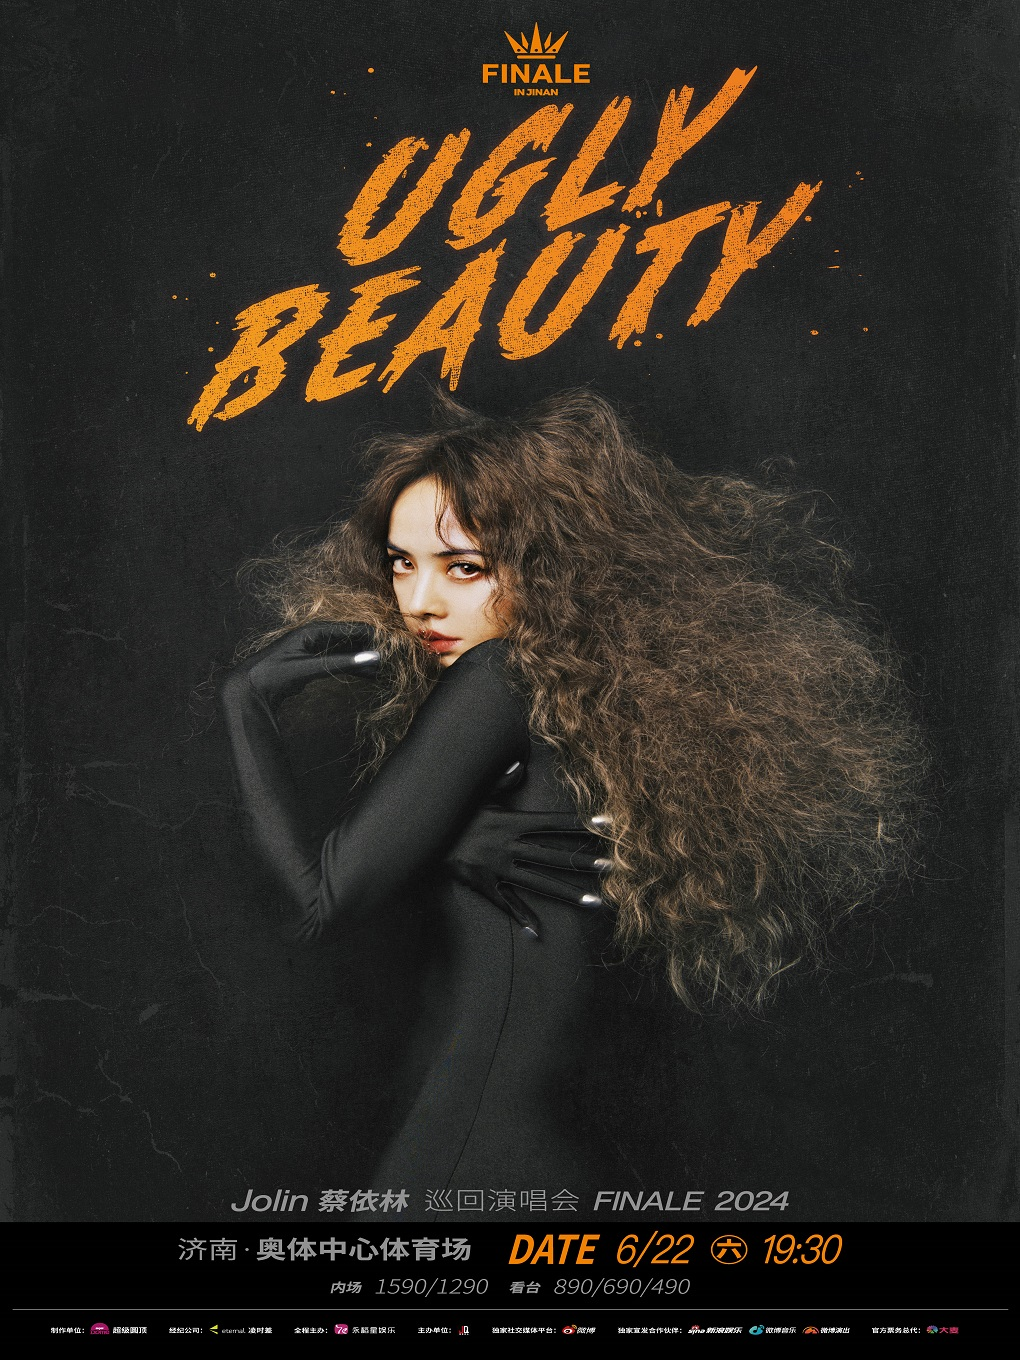 [济南]蔡依林 Ugly Beauty 2024 巡回演唱会 FINALE 济南站